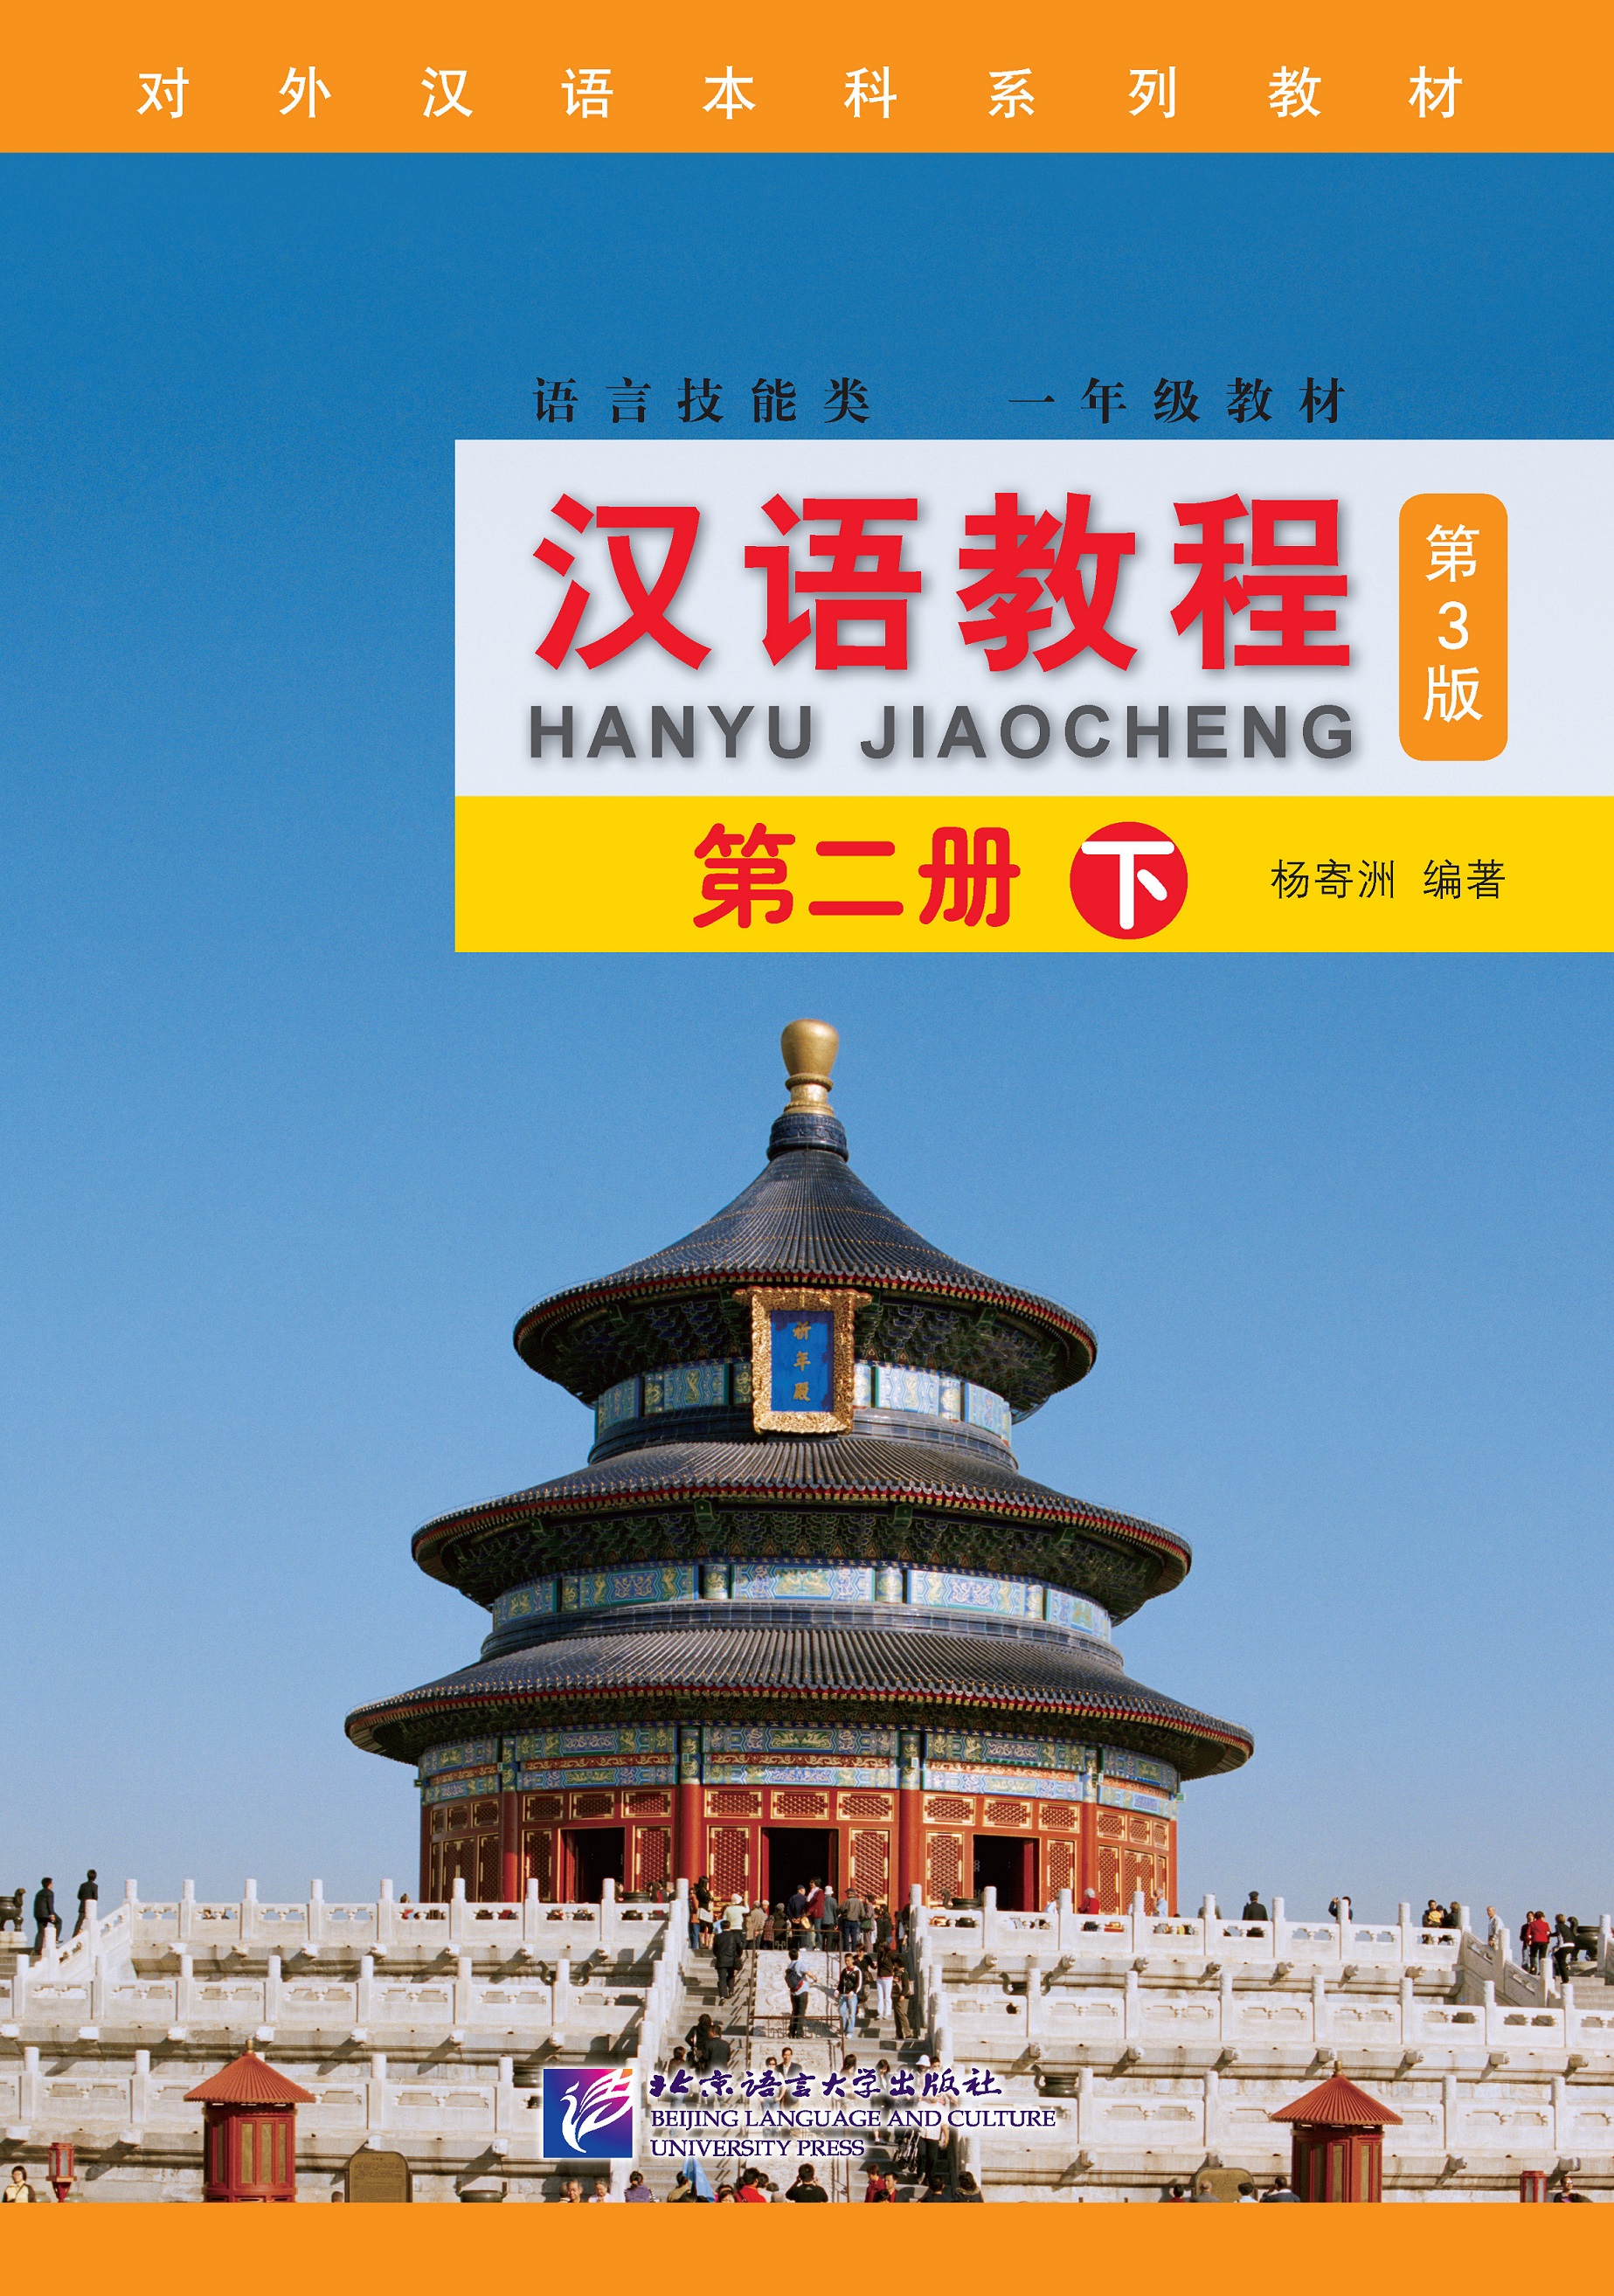 Chinese Course 2B (3rd Edition: English +QR) #汉语教程 #หนังสือเรียนภาษาจีน #hanyu Jiaocheng